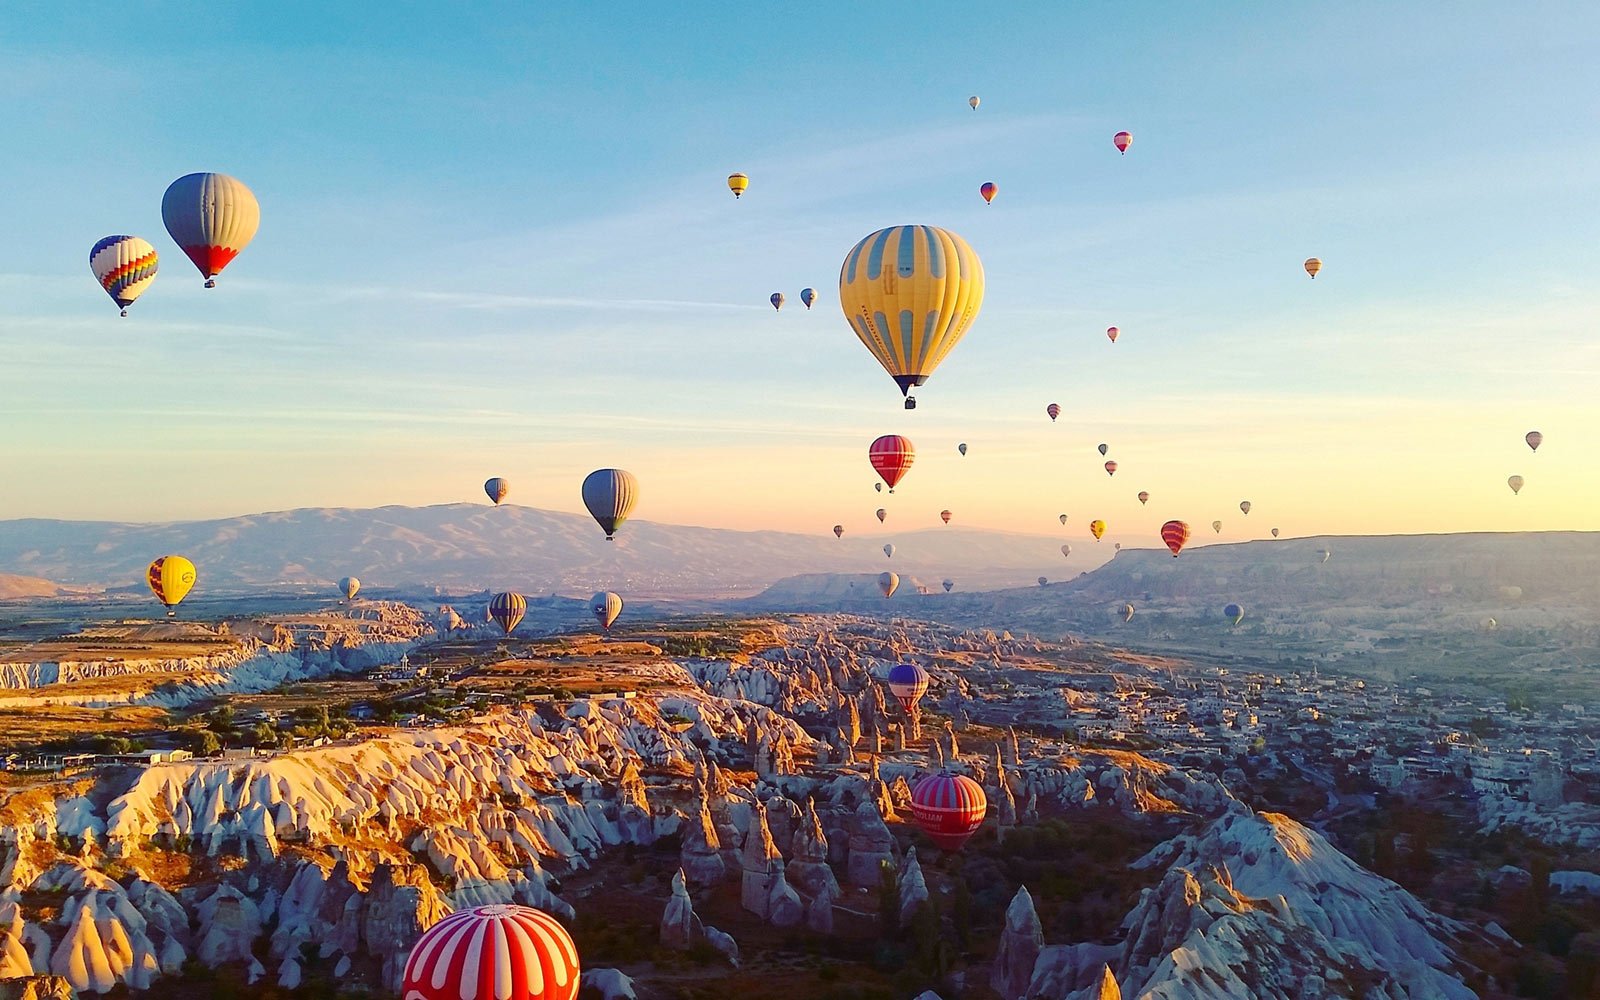 cappadocia balloons tour